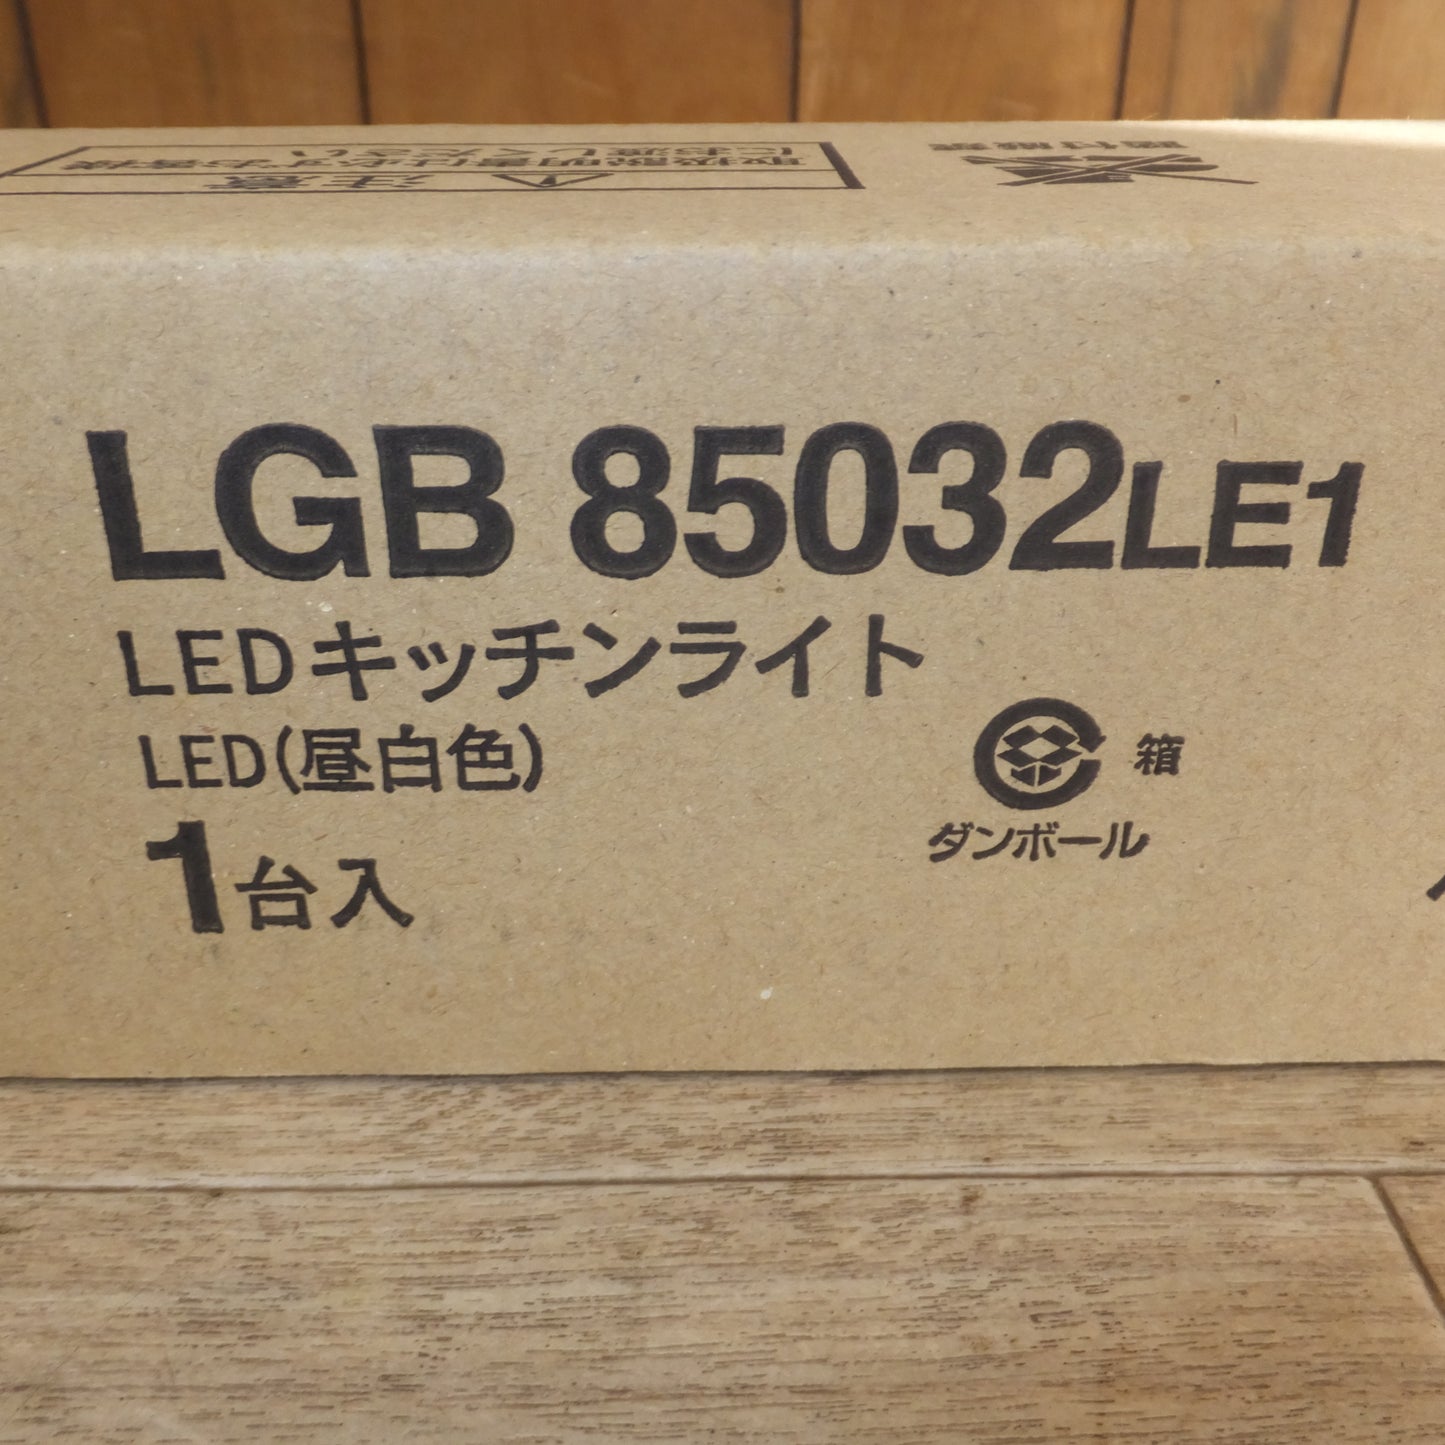 [送料無料]未使用★パナソニック Panasonic LEDキッチンライト LGB85032 LE1 LED 昼白色 1台入(2)★